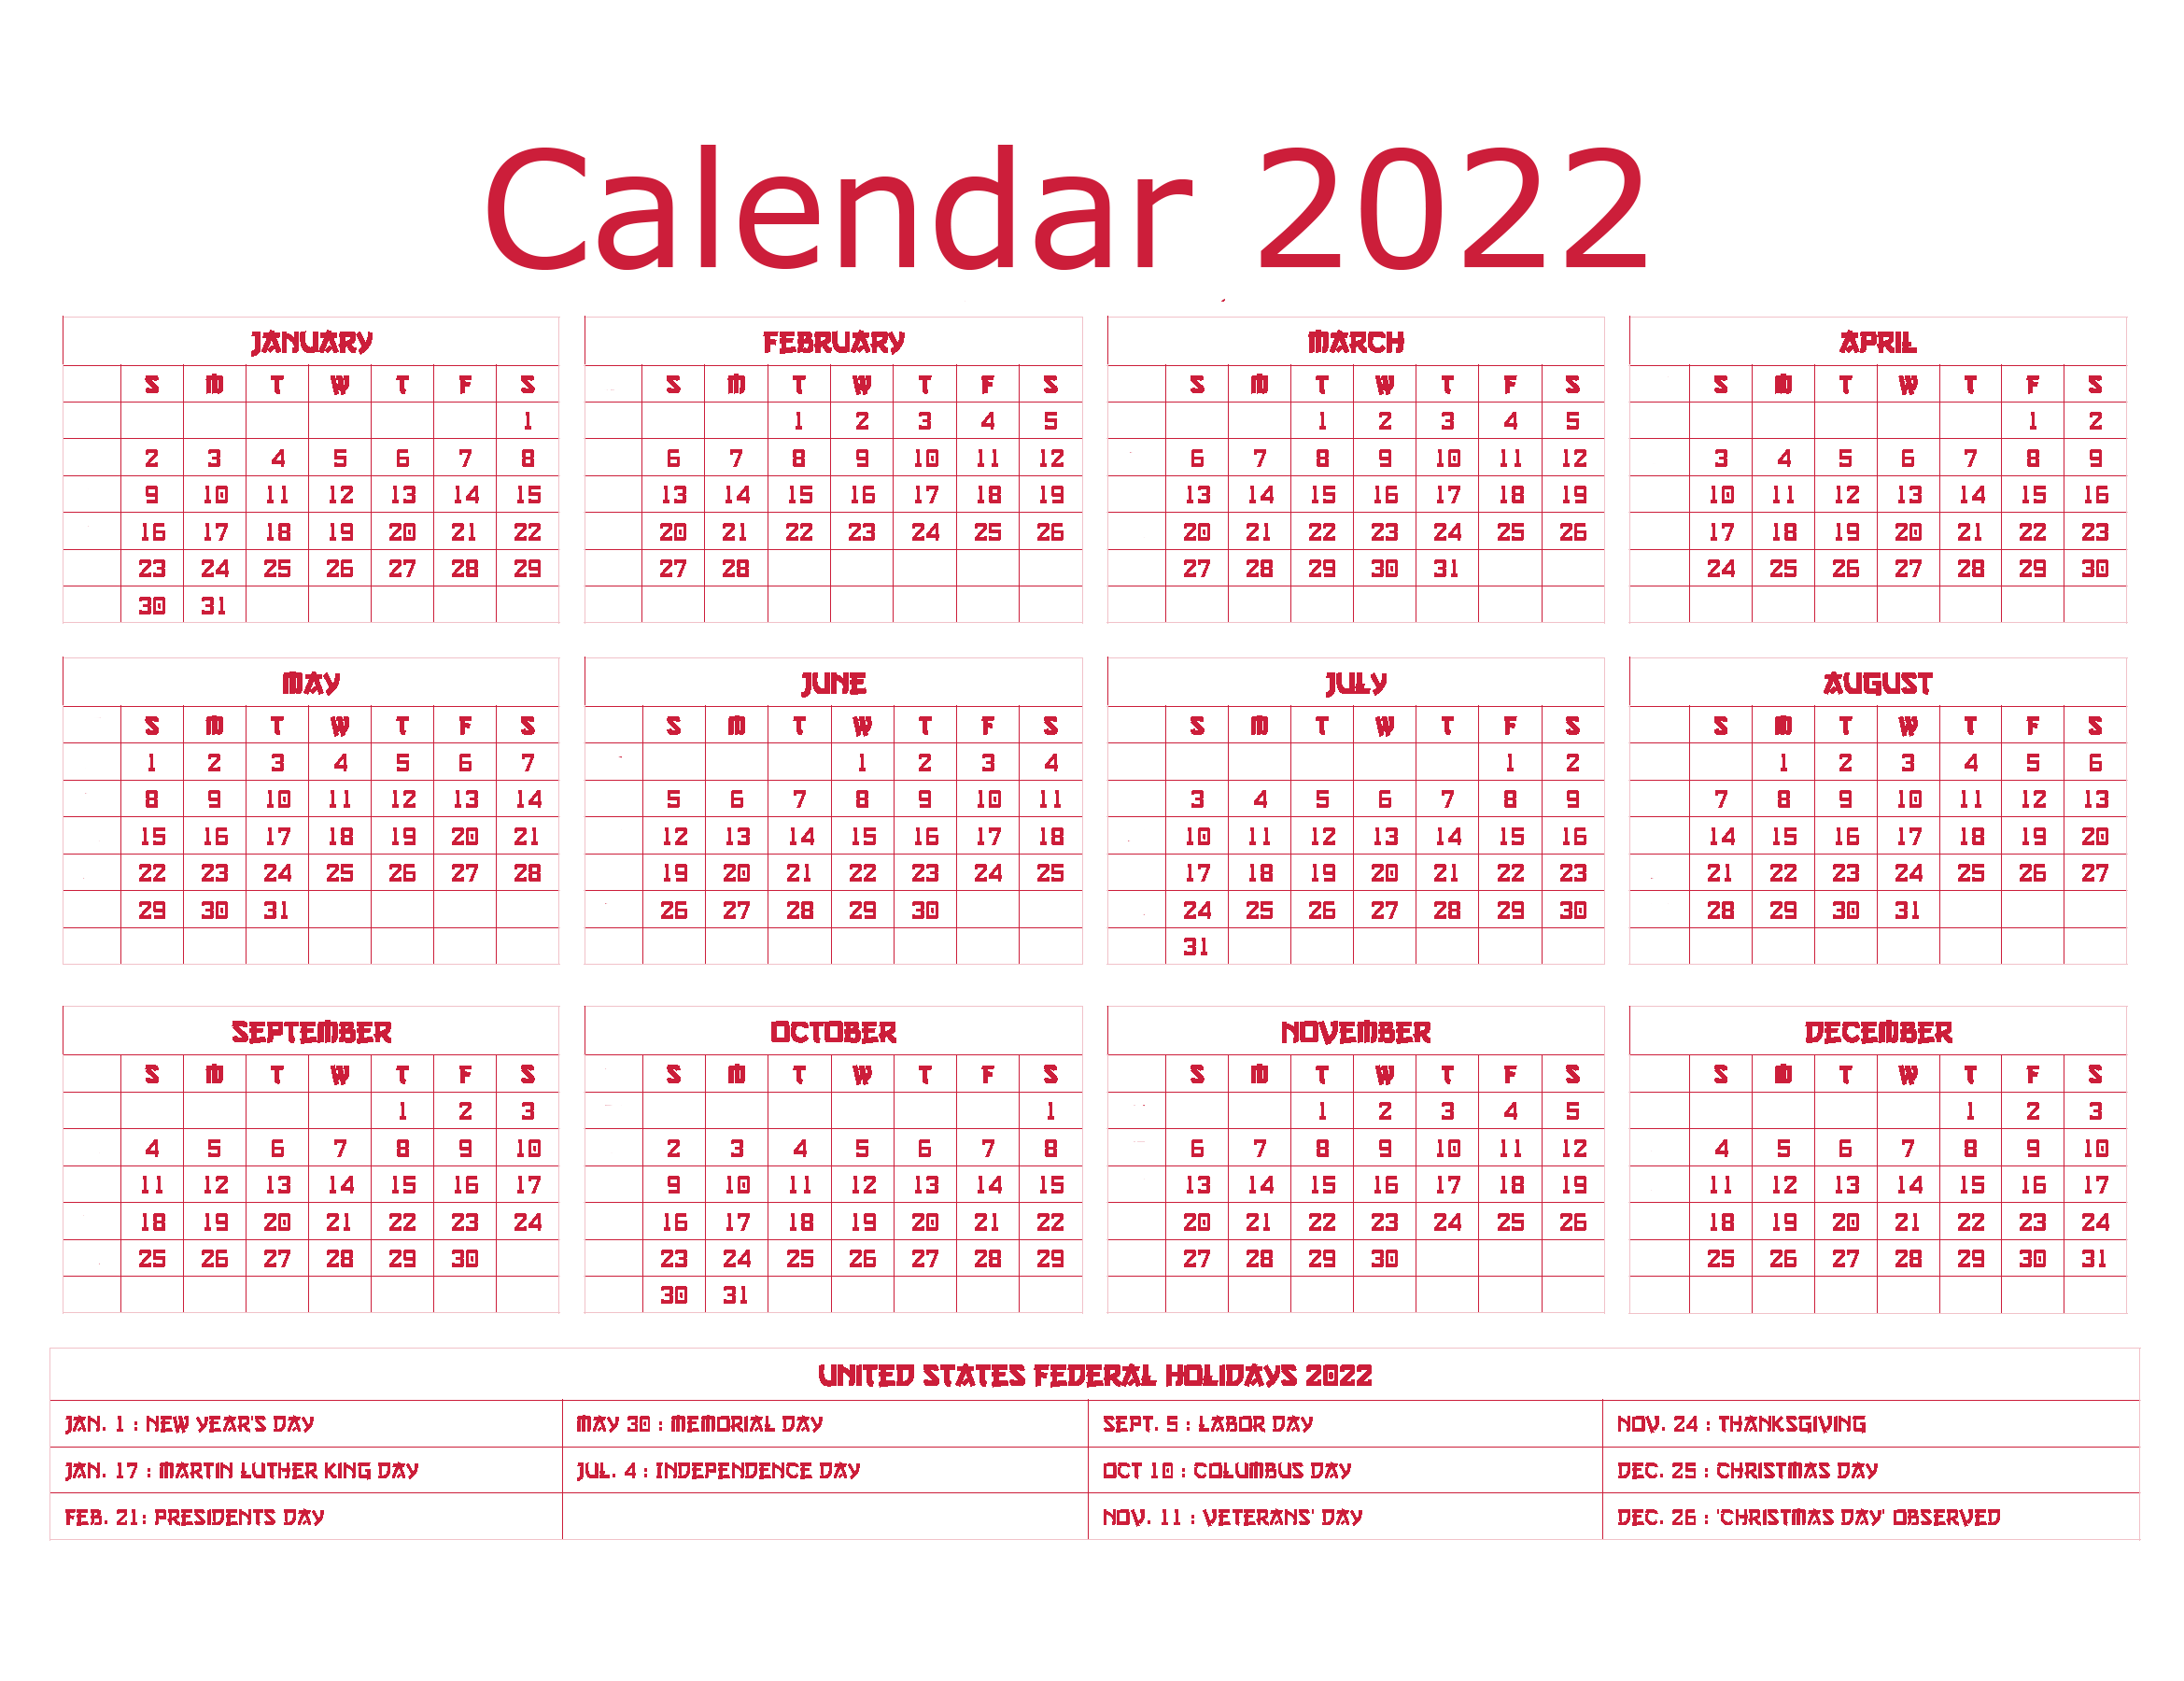 Jahr 2022 Kalender PNG Transparent Image